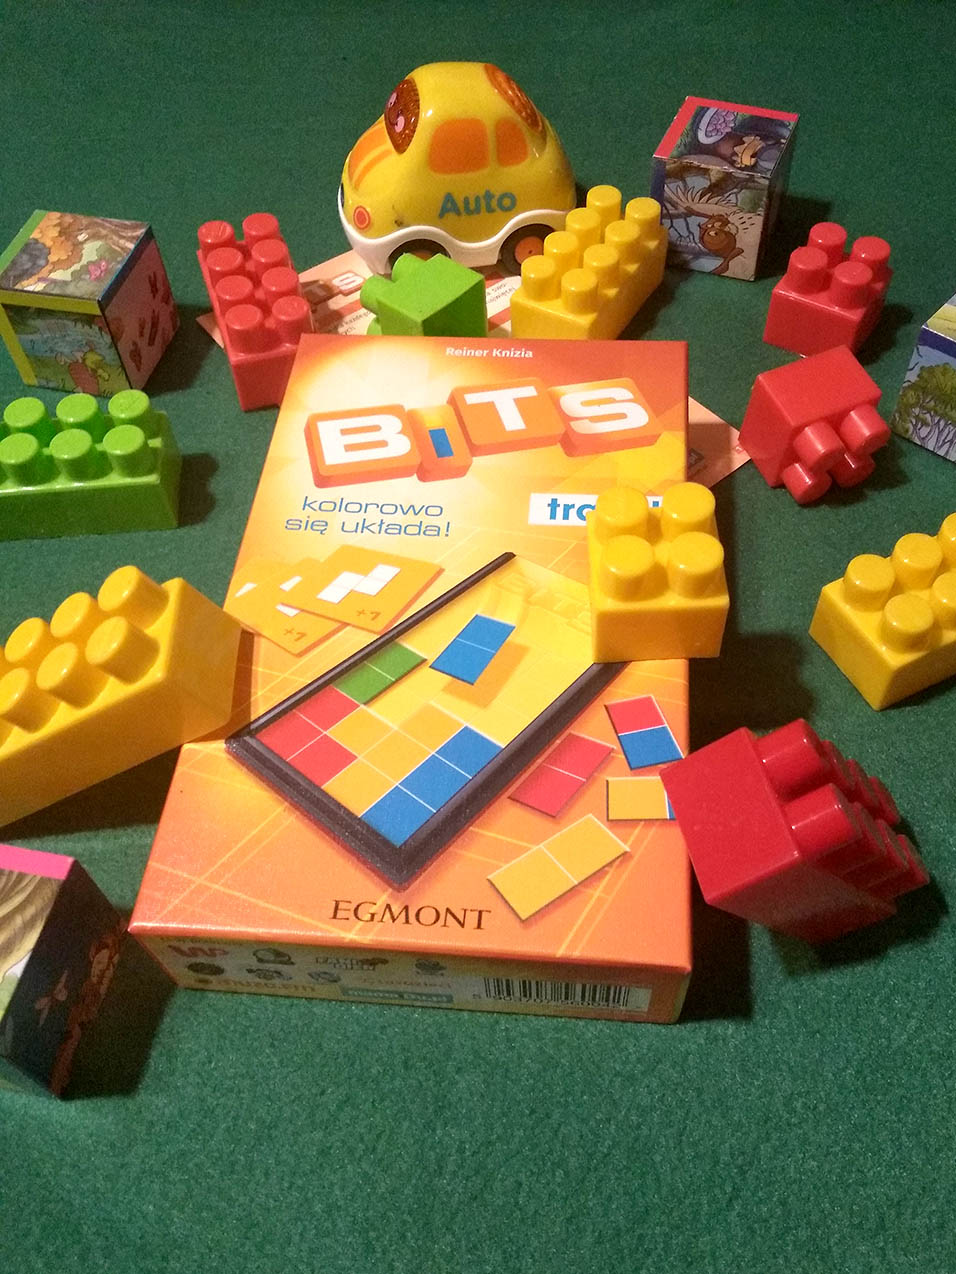 Tetris w kieszonkowej wersji wchodzi na salony. „Bits” - recenzja gry